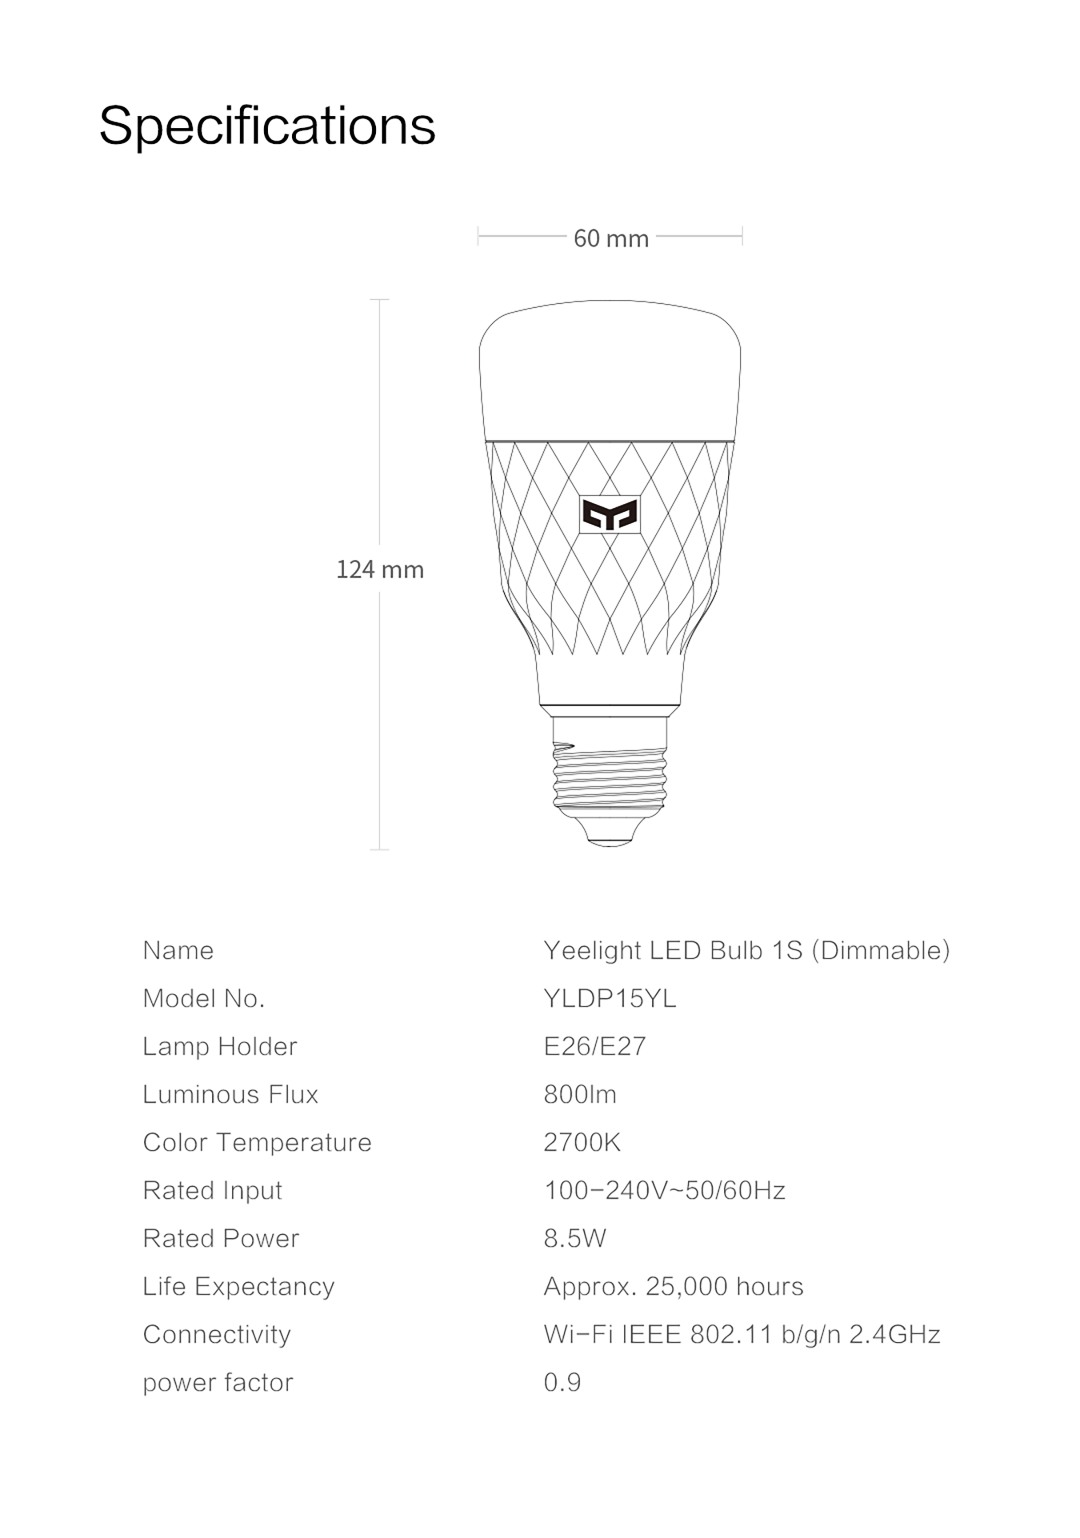 Yeelight Smart LED Bulb 1S Colorful RGB E27 1SE Lamp Light Bulb For Mi Home  White Option Smart Dimmer Switch